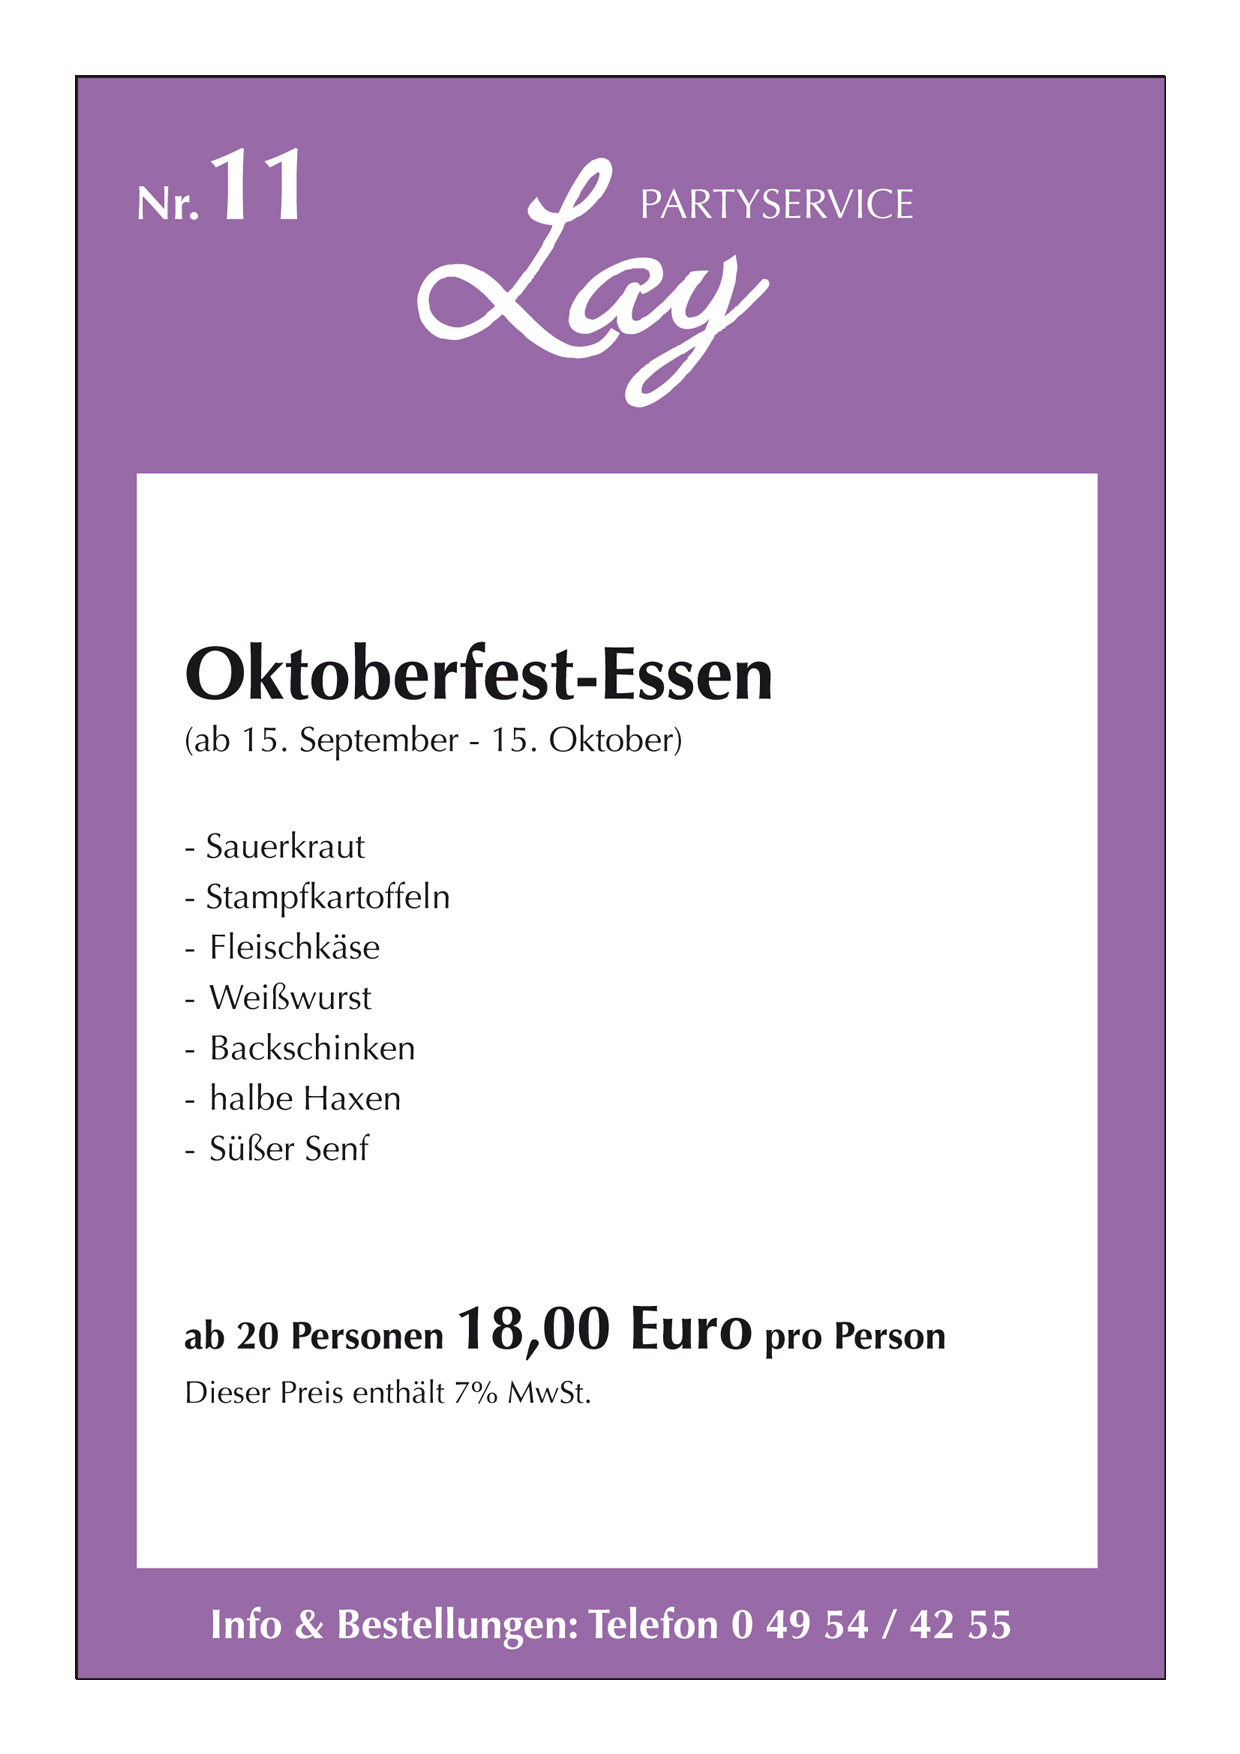 11-LAY-Party-Service Oktoberfest-Essen